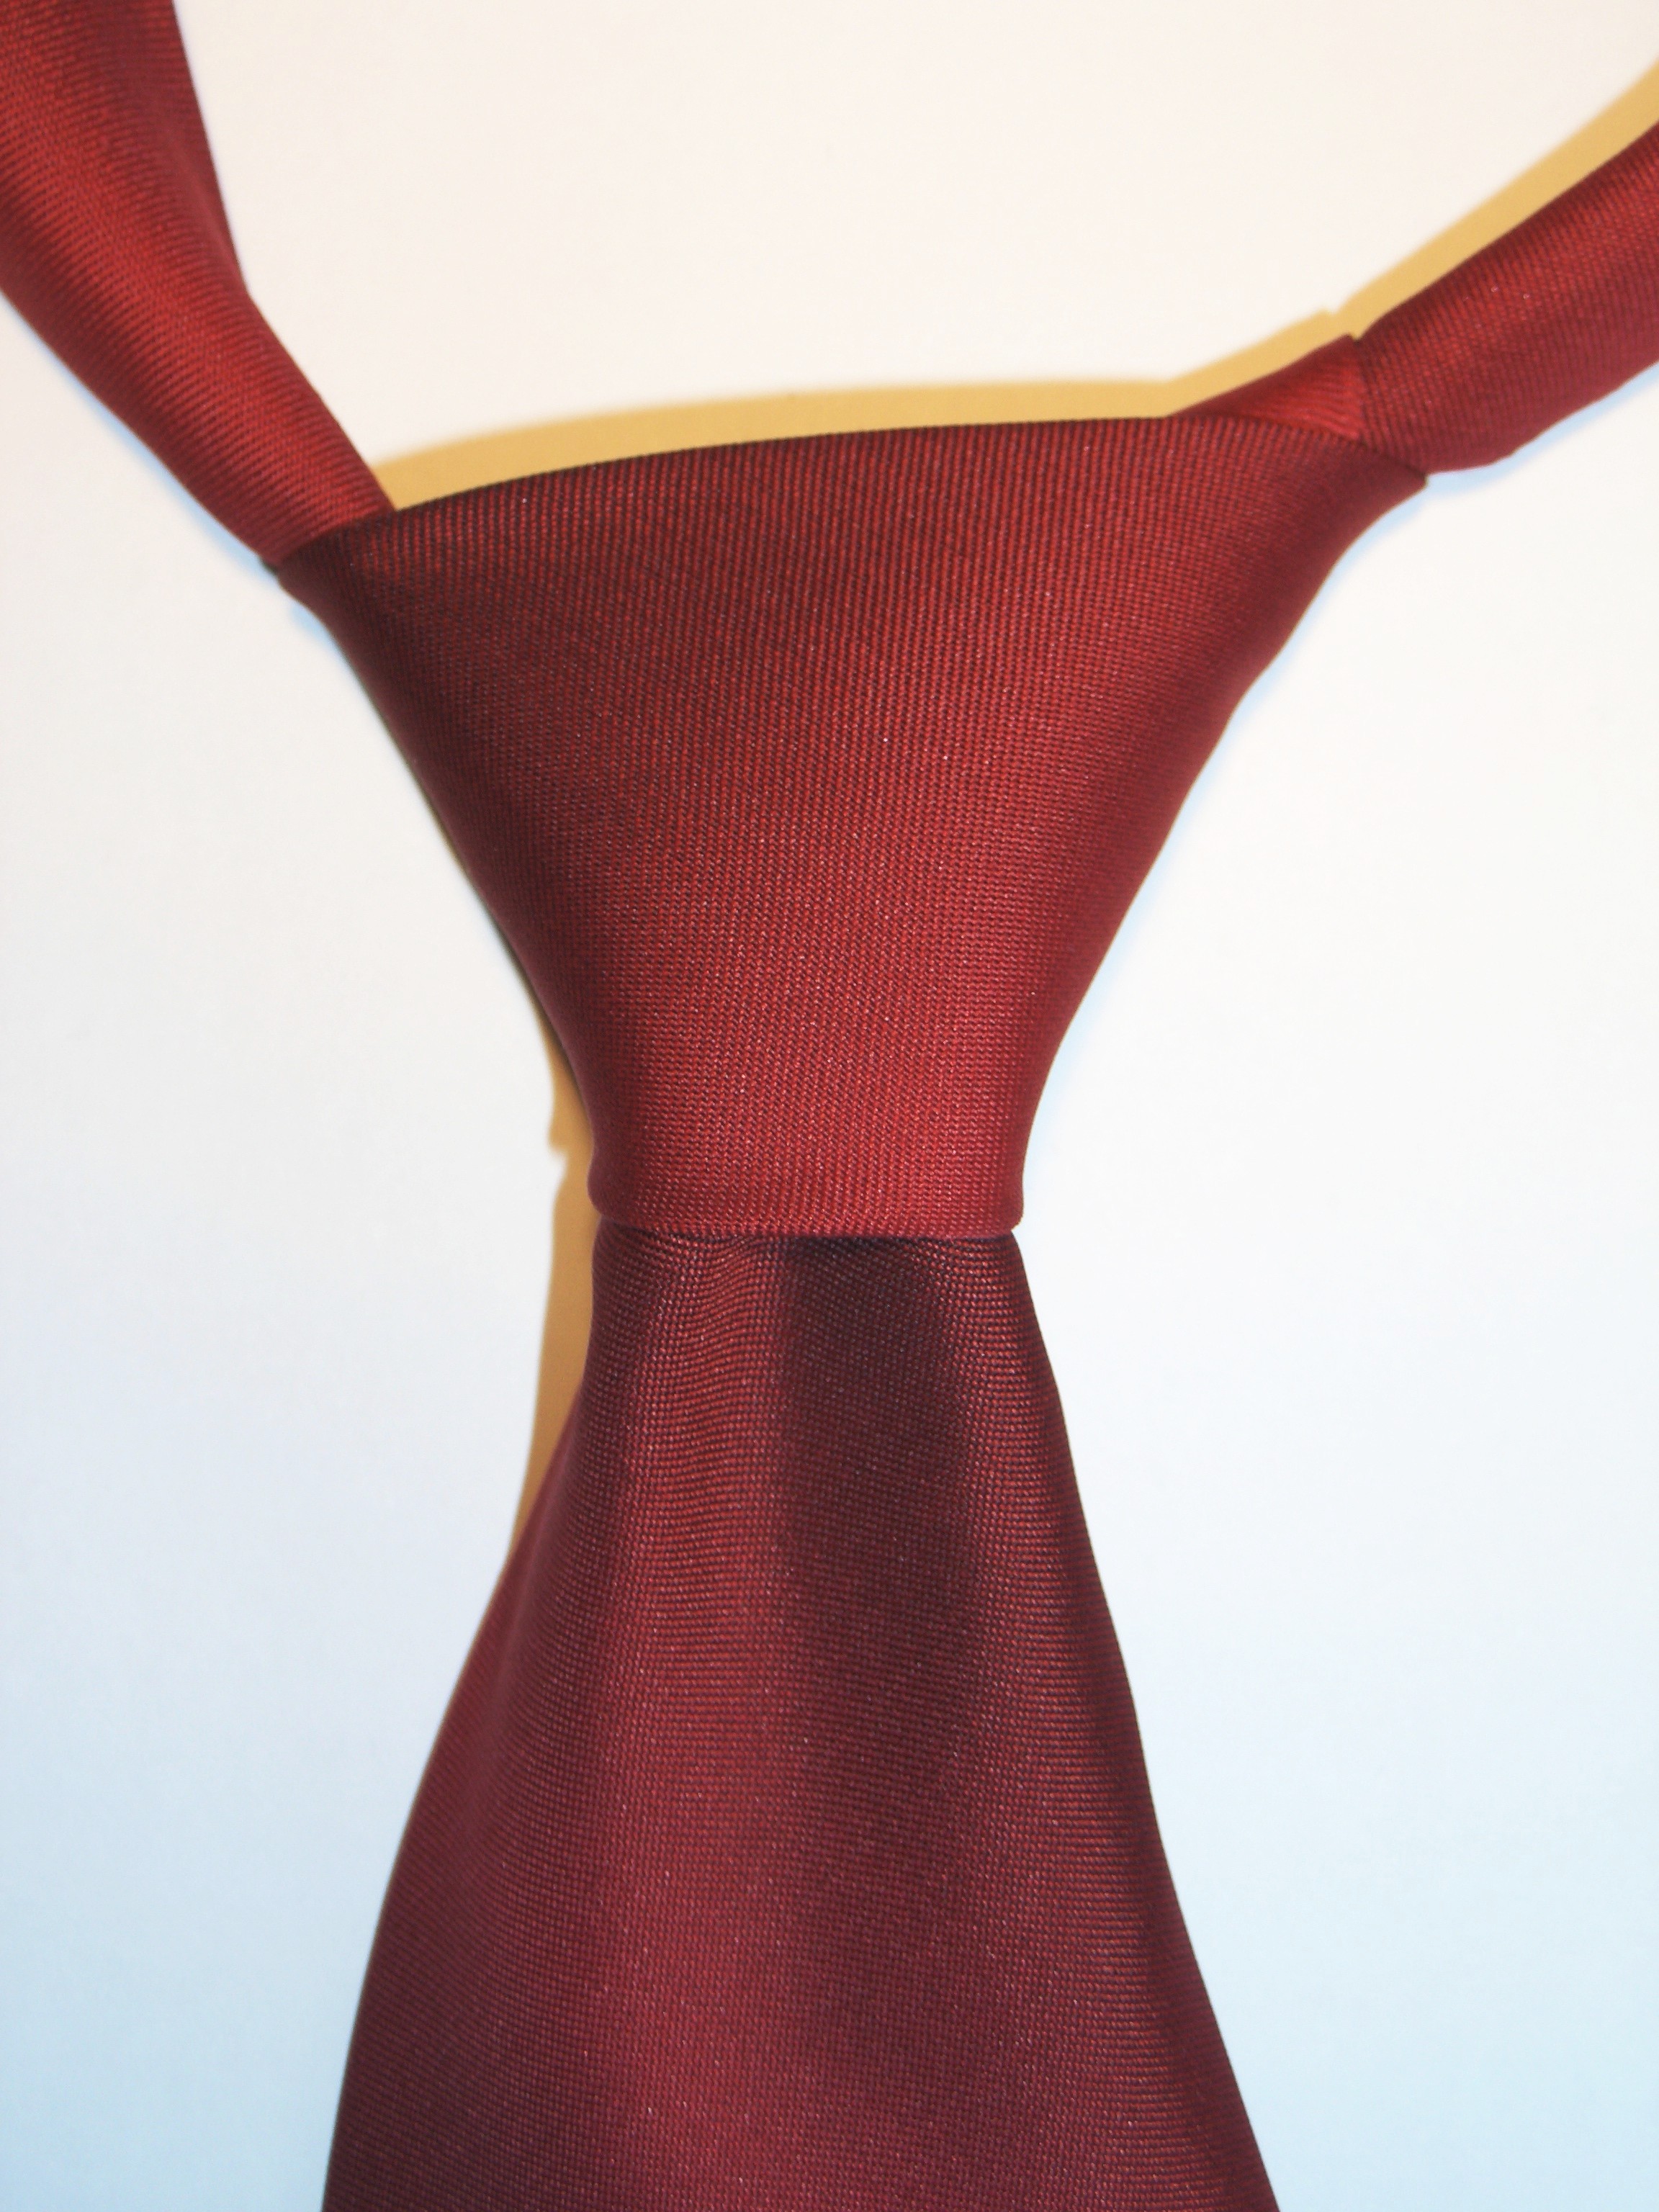 Necktie Half-Windsor knot